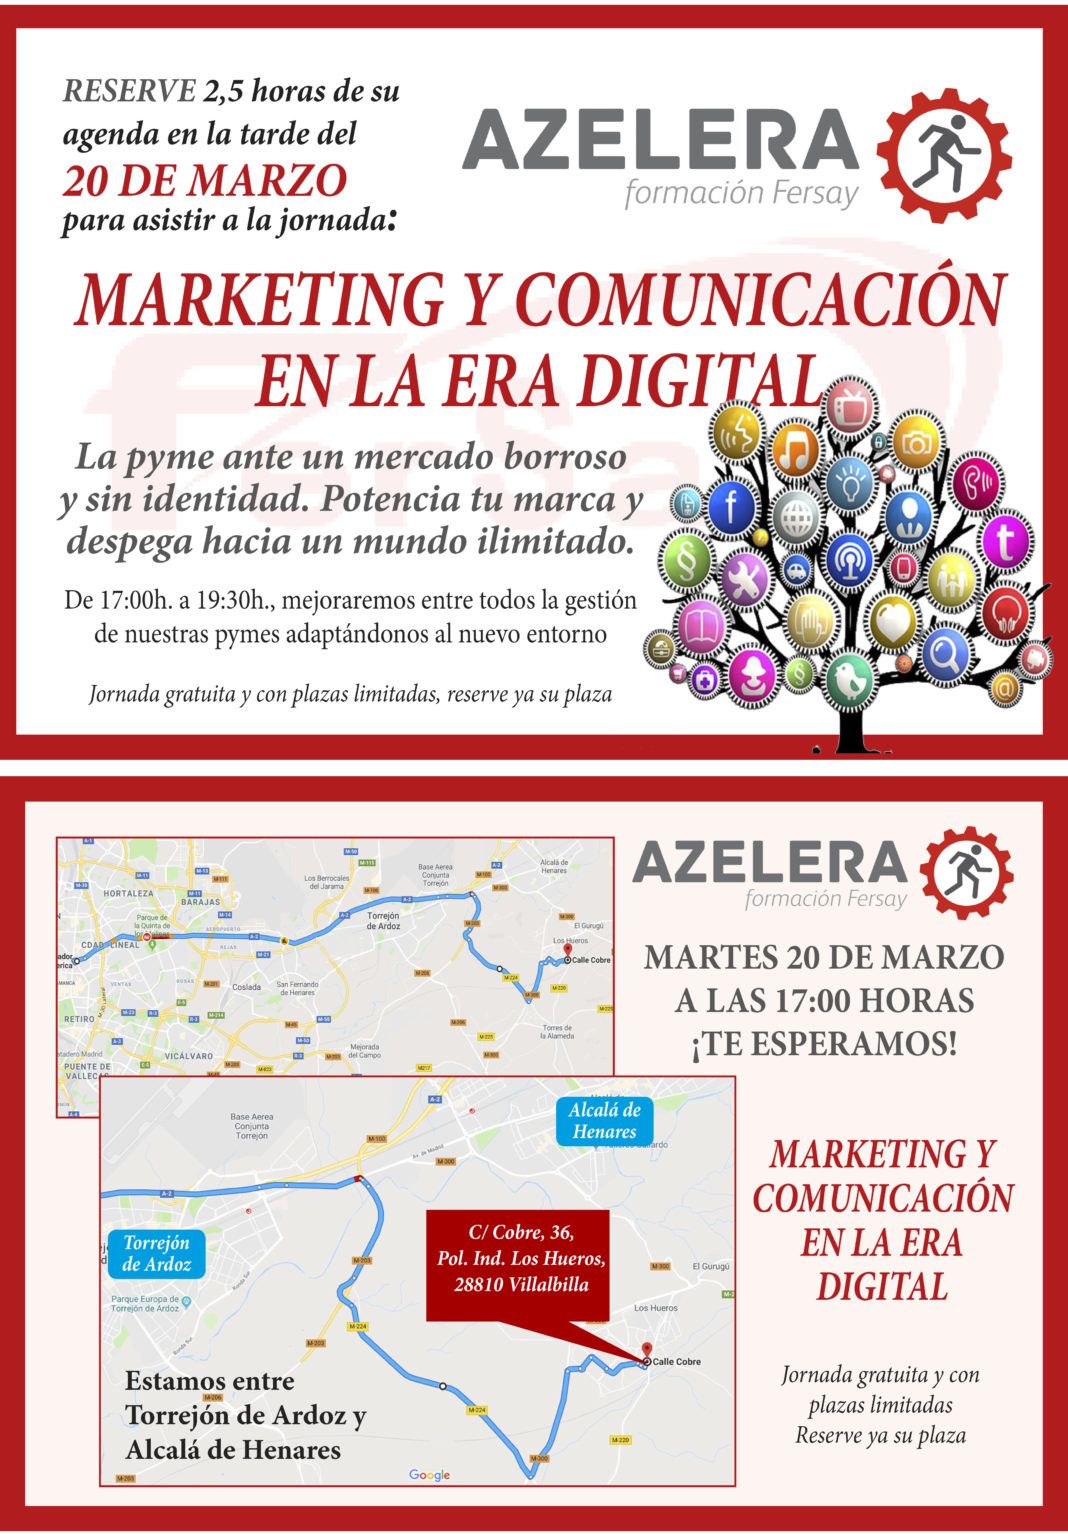 Marketing y comunicación en la Era Digital, curso gratuito de Fersay